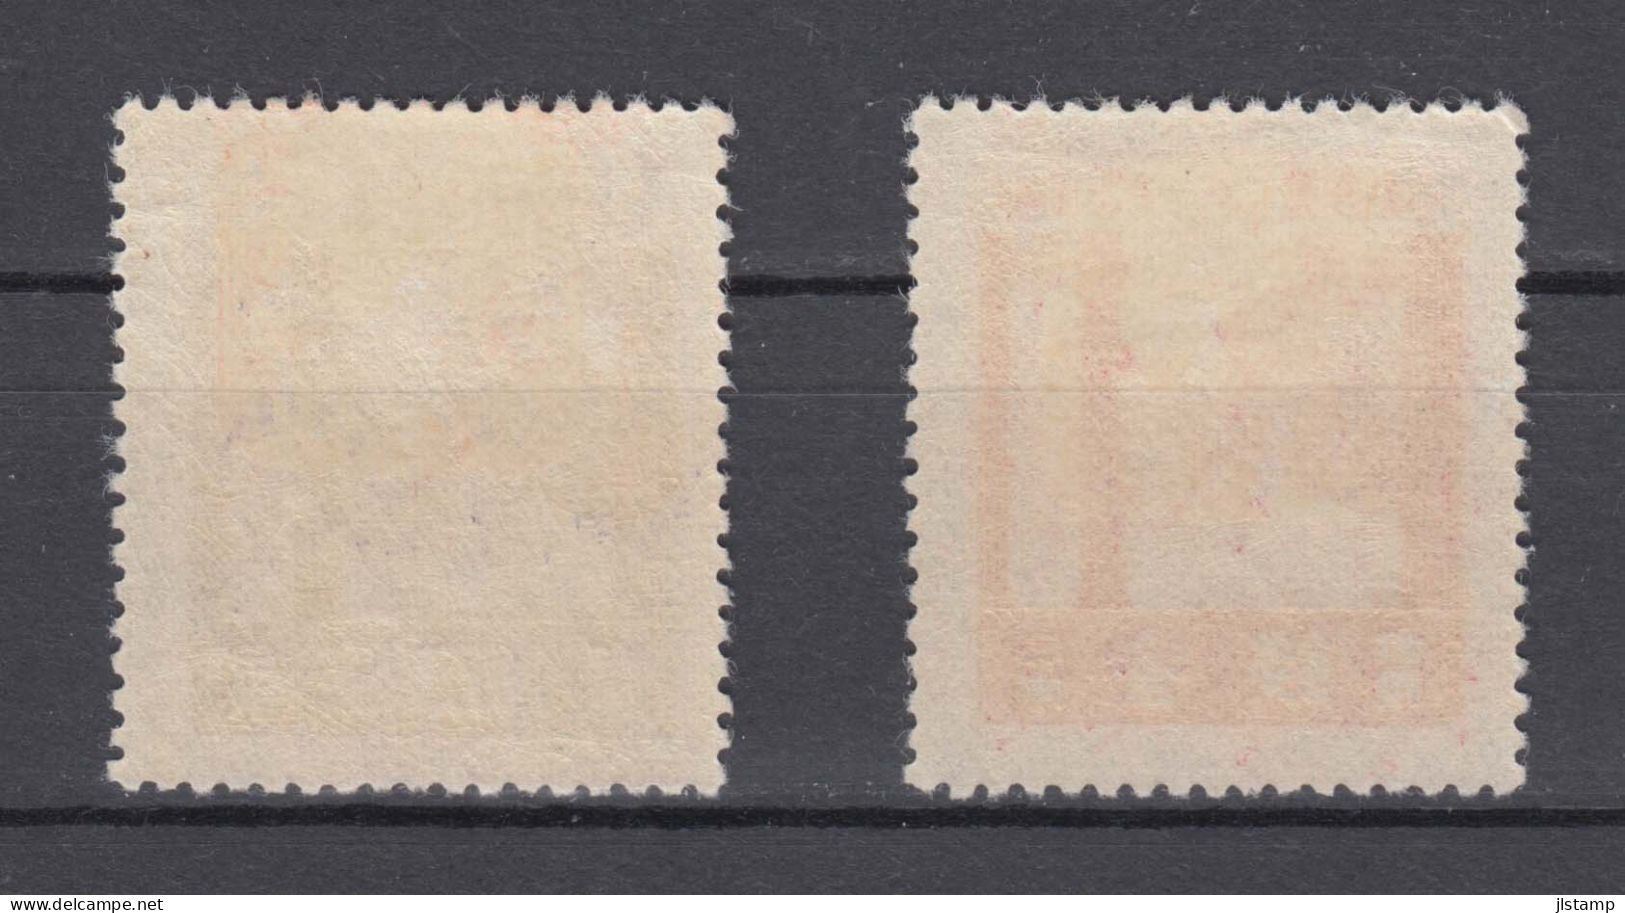 Japan 1929 Ise Shrines Stamps Set Of 2 ,Scott# 206-207,OG MH,VF - Nuovi